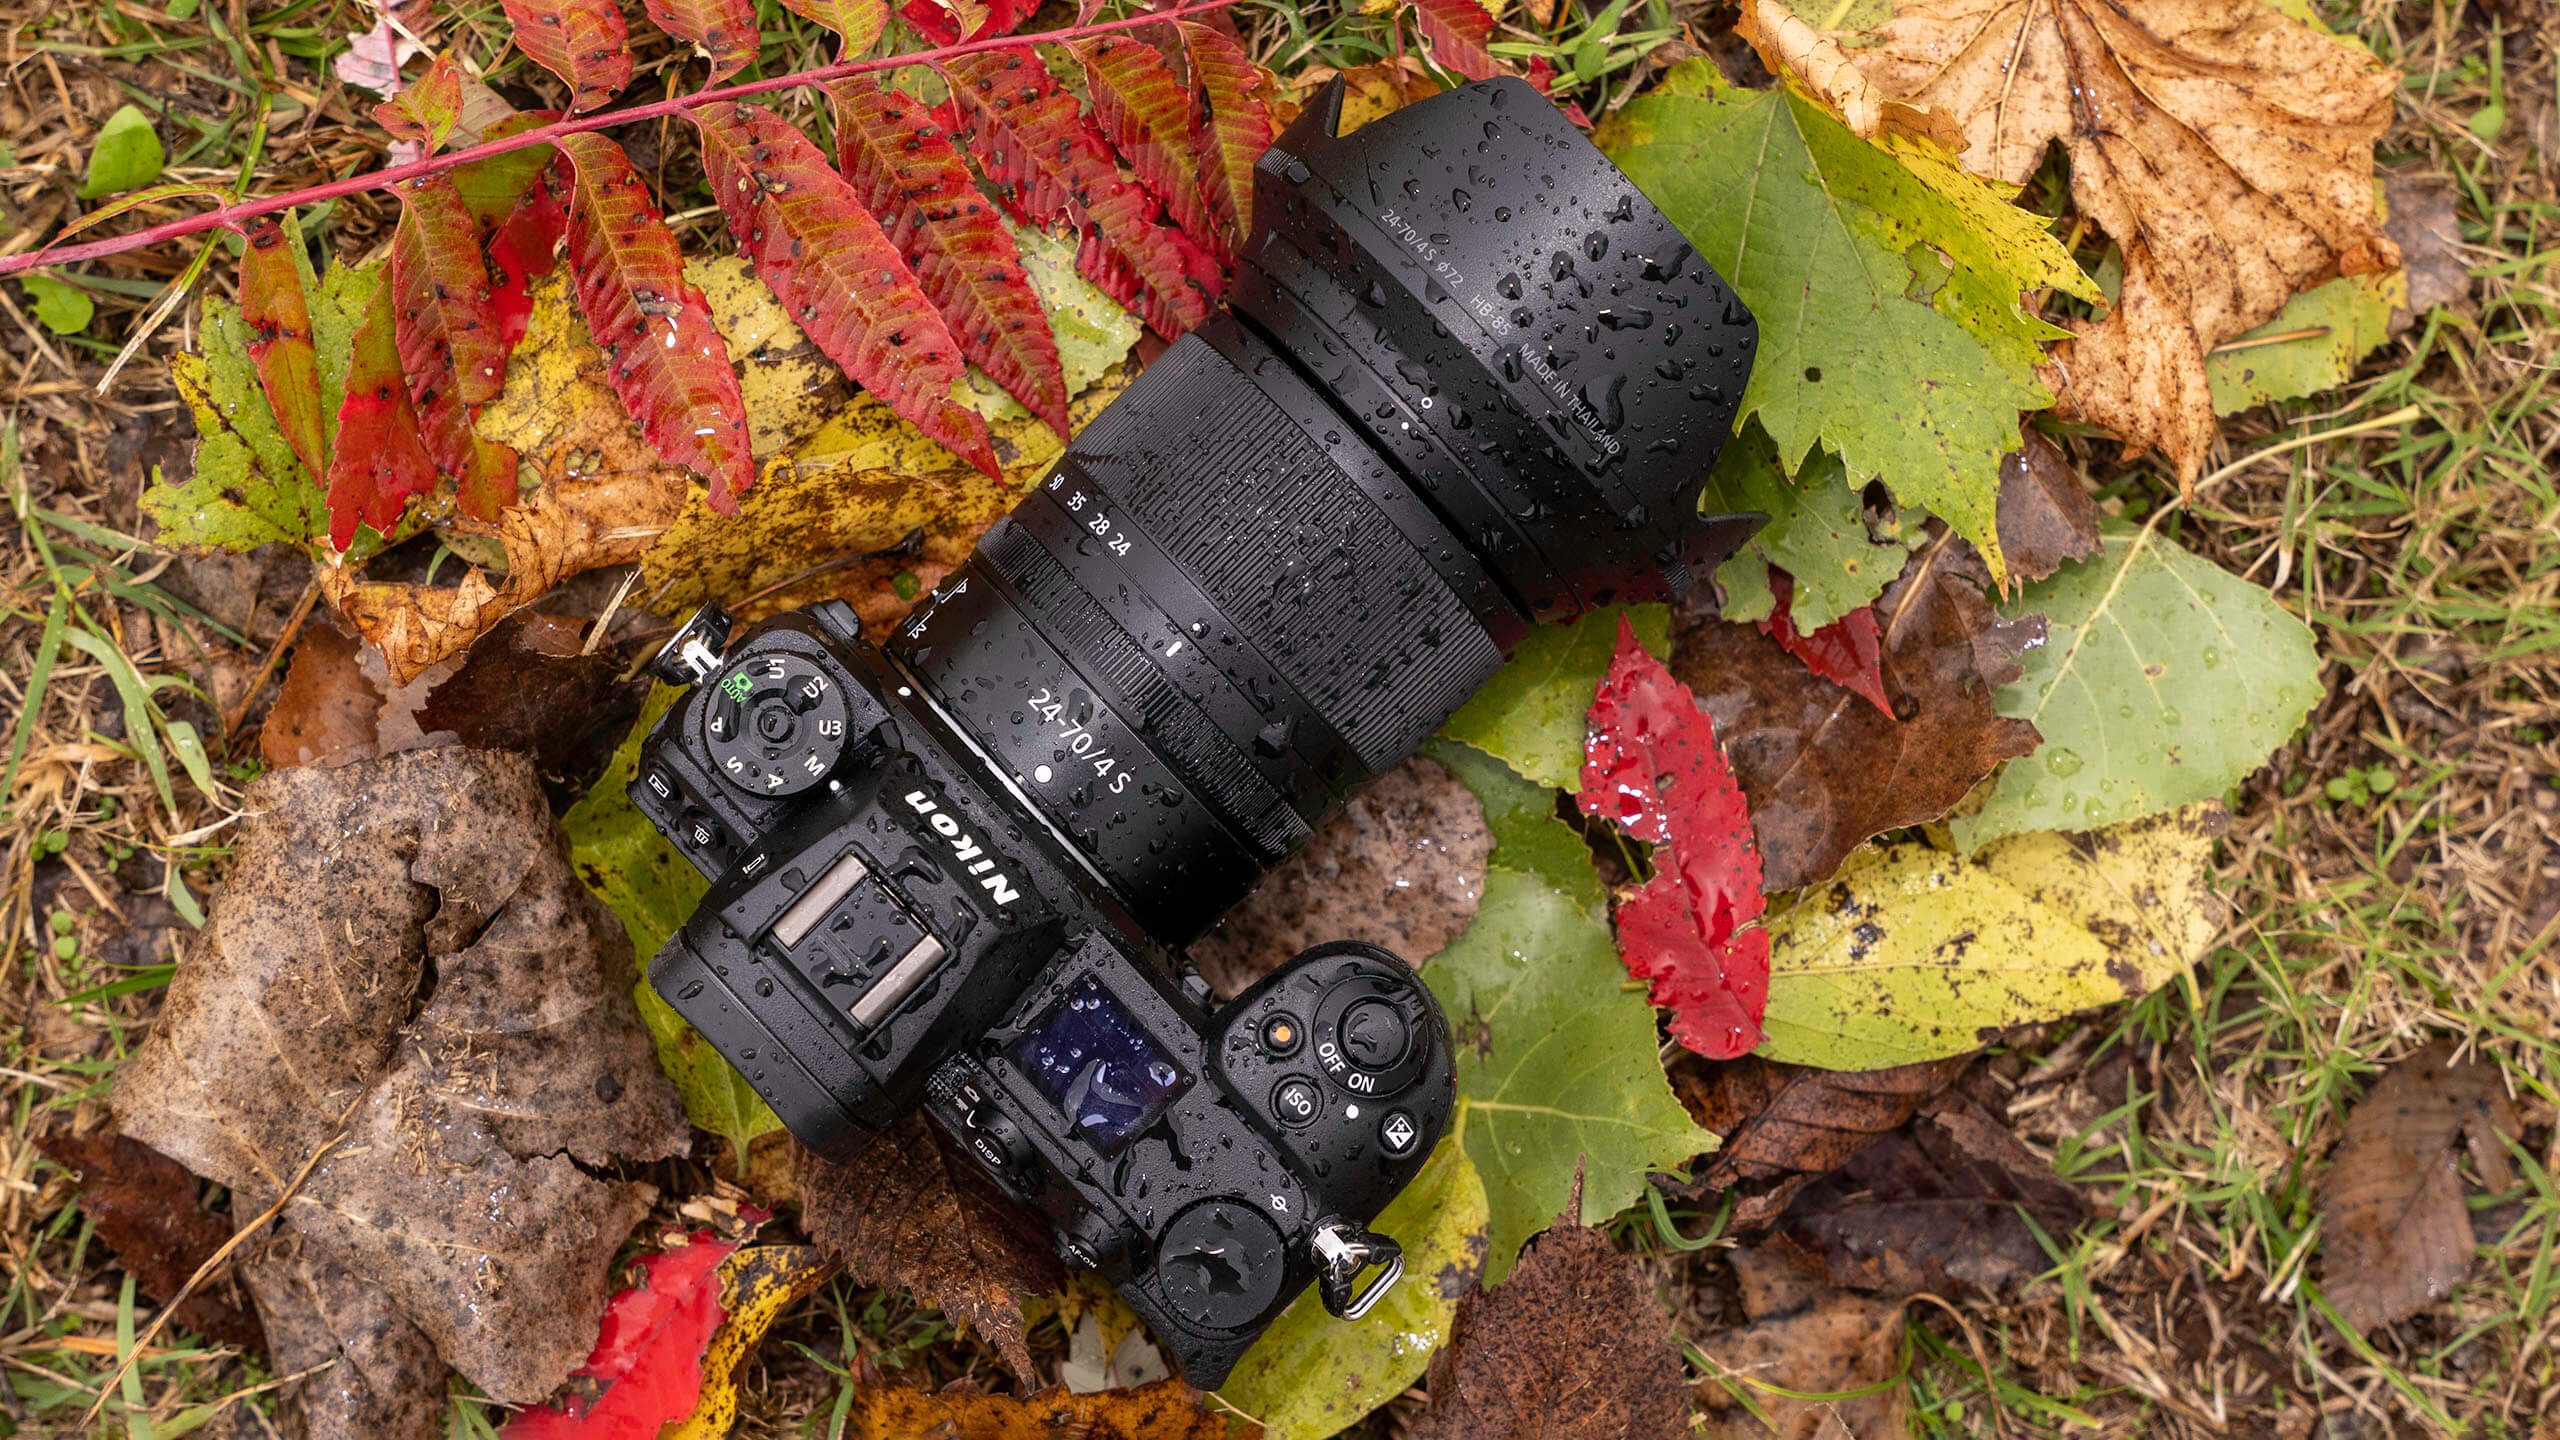 カメラ レンズ(ズーム) Nikon Z 24-70mm F/4 S review: A kit lens that punches above its weight